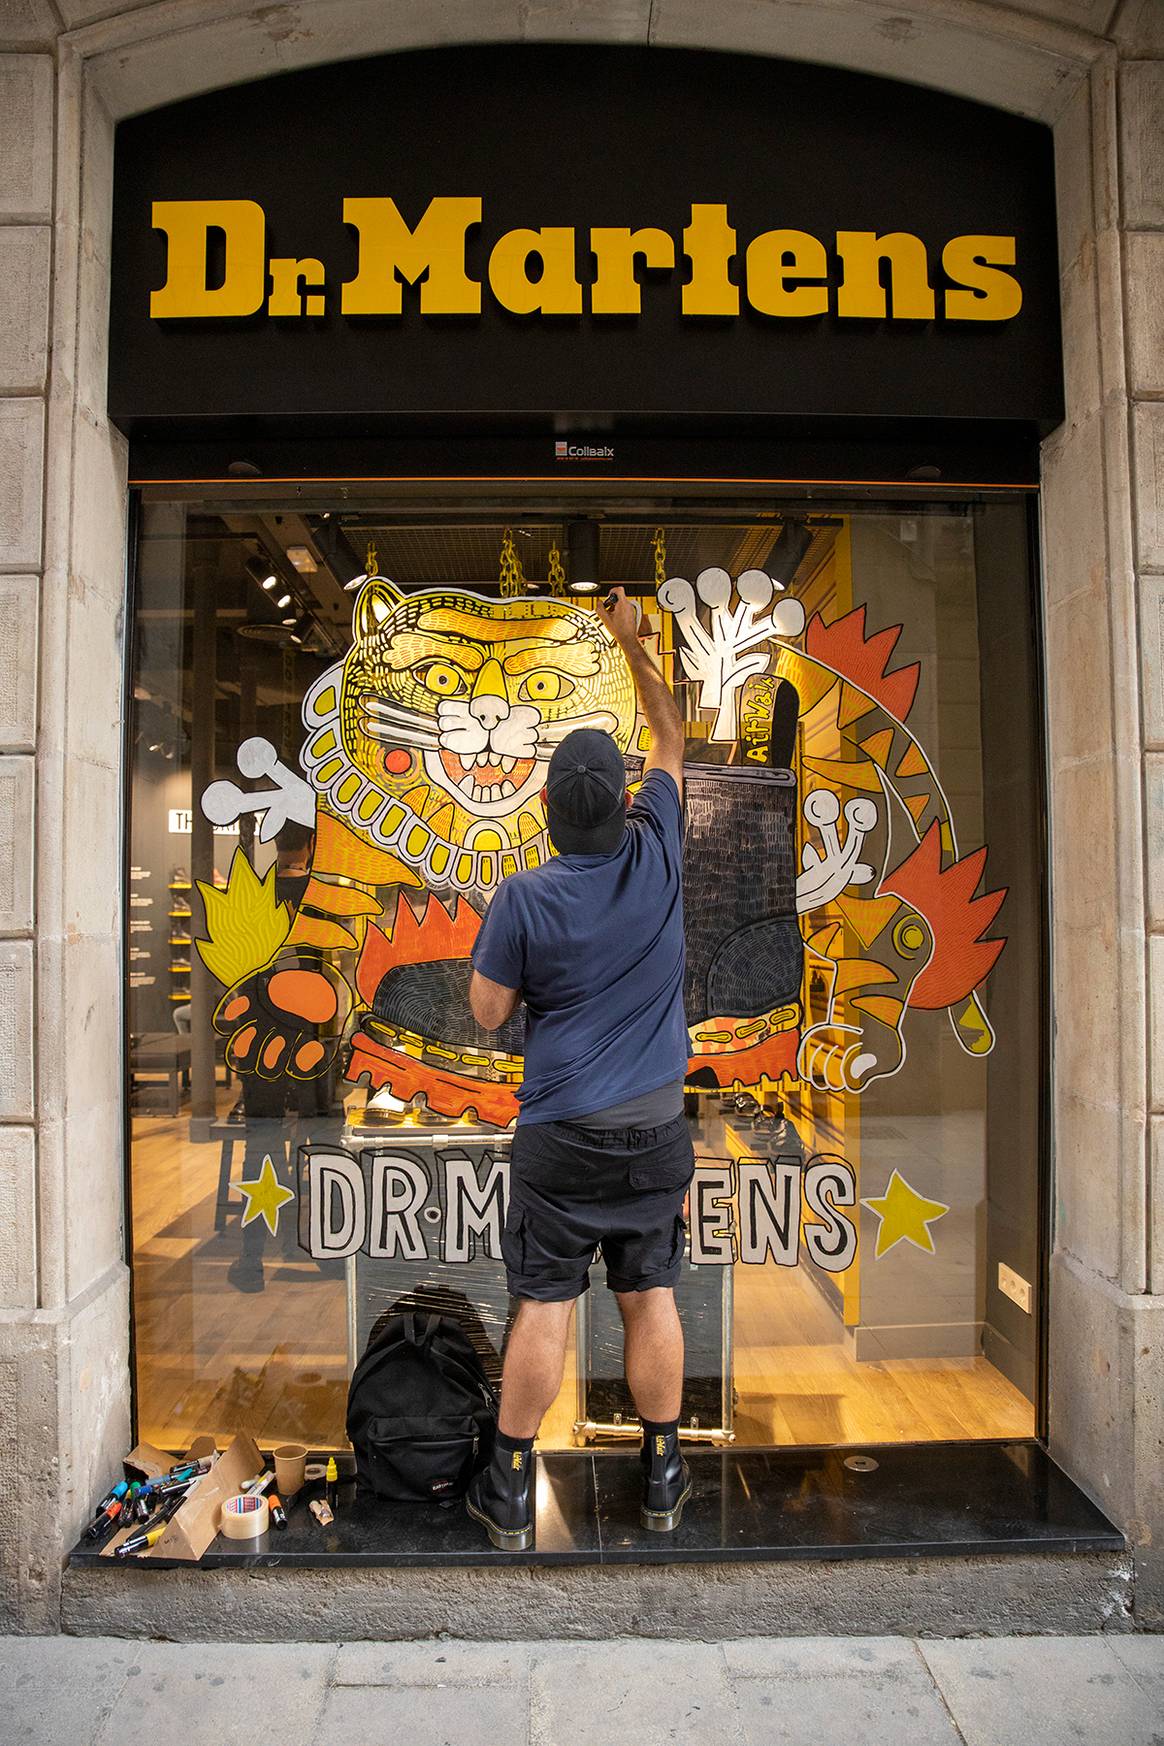 Photo Credits: Asis Percales frente al escaparate de la nueva tienda de Dr. Martens en Barcelona. Cortesía de Dr. Martens.